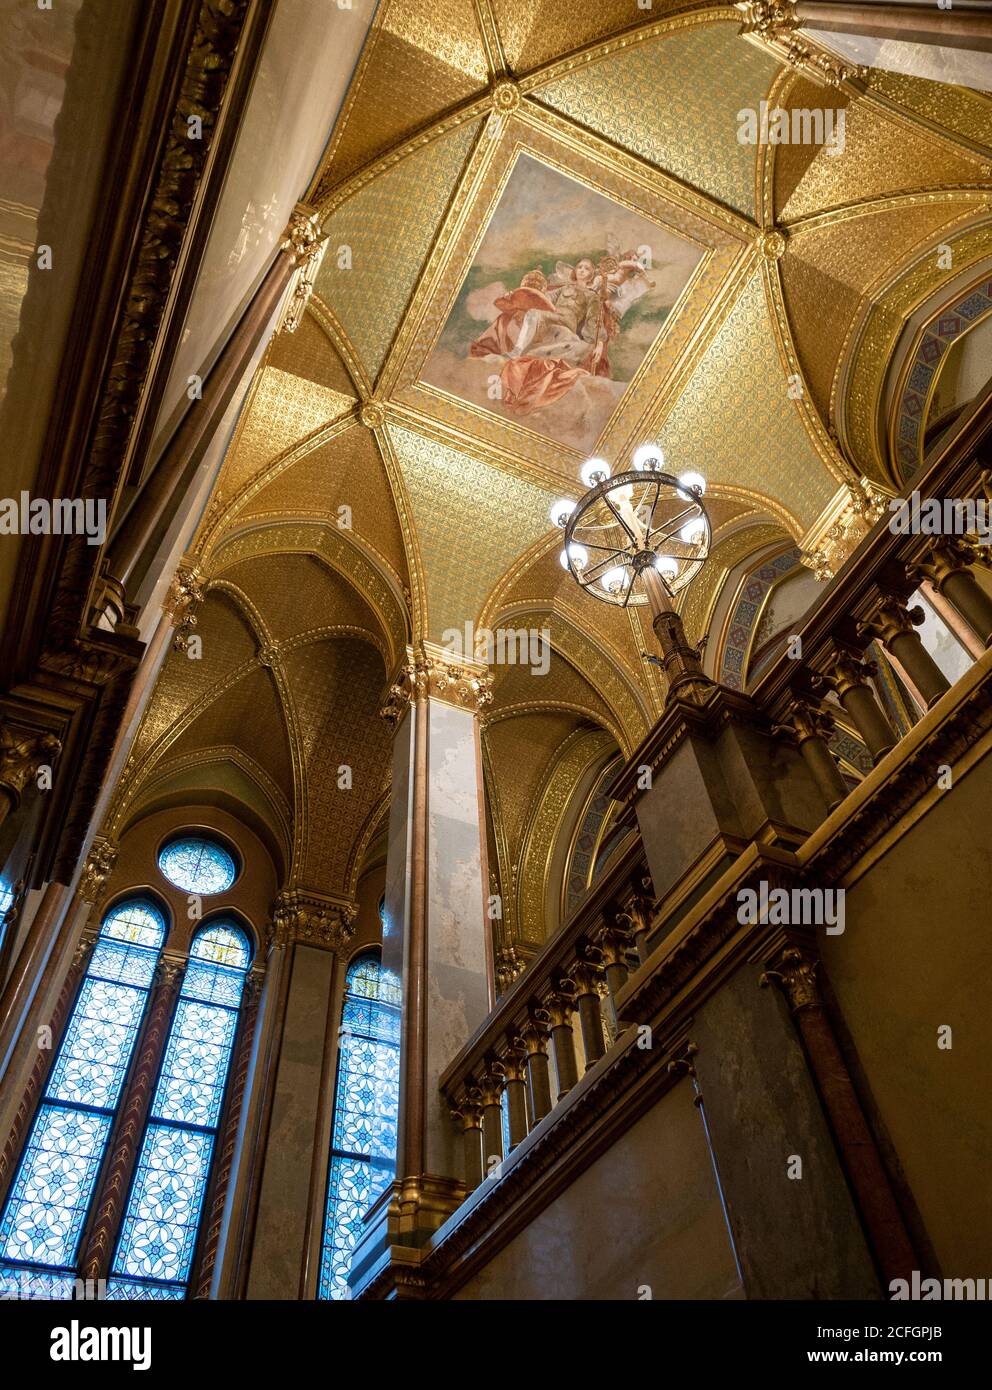 Opulento soffitto parlamentare: Una candelabra dorata illumina il soffitto dipinto incorniciato da foglie d'oro in una scala dell'edificio del Parlamento ungherese. Foto Stock